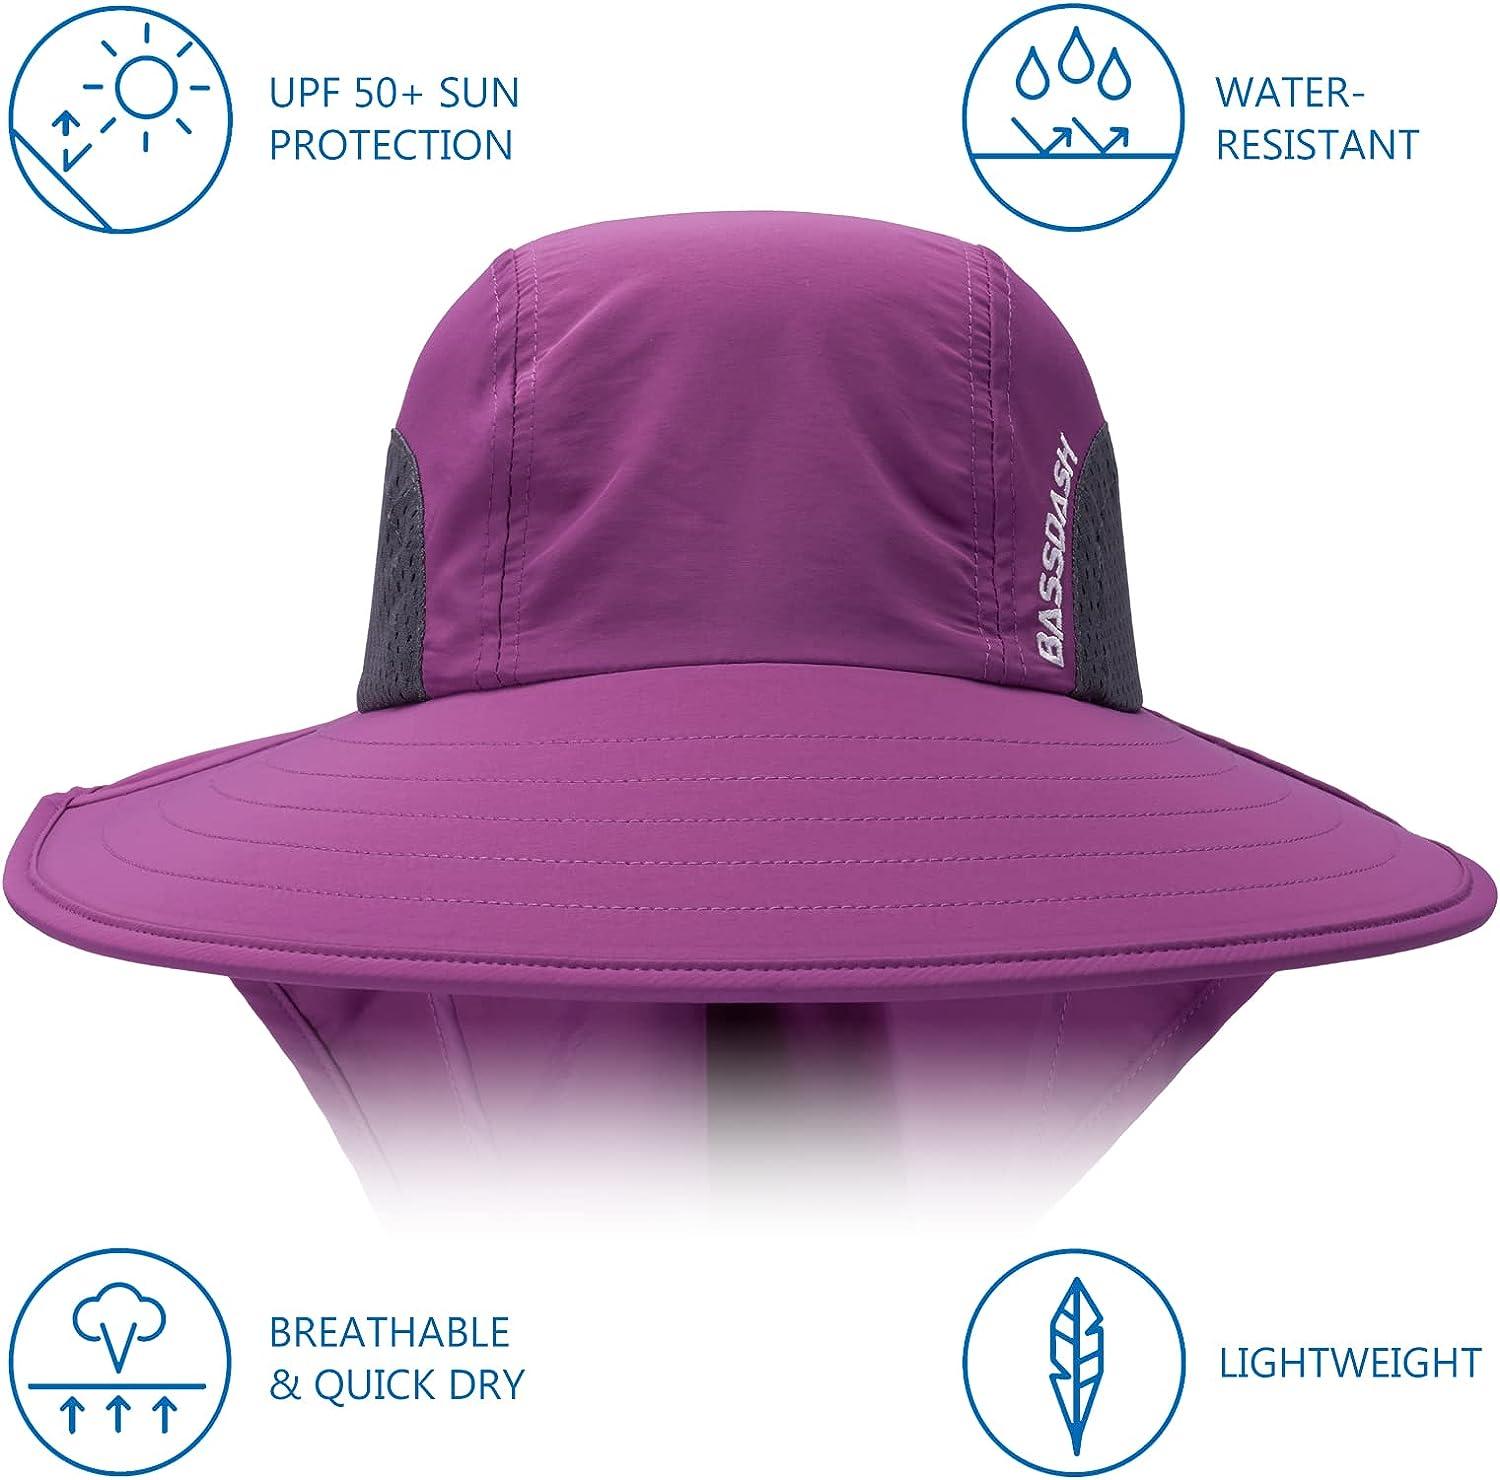 BASSDASH UPF 50+ Unisex Water Resistant Wide Brim Sun Hat with